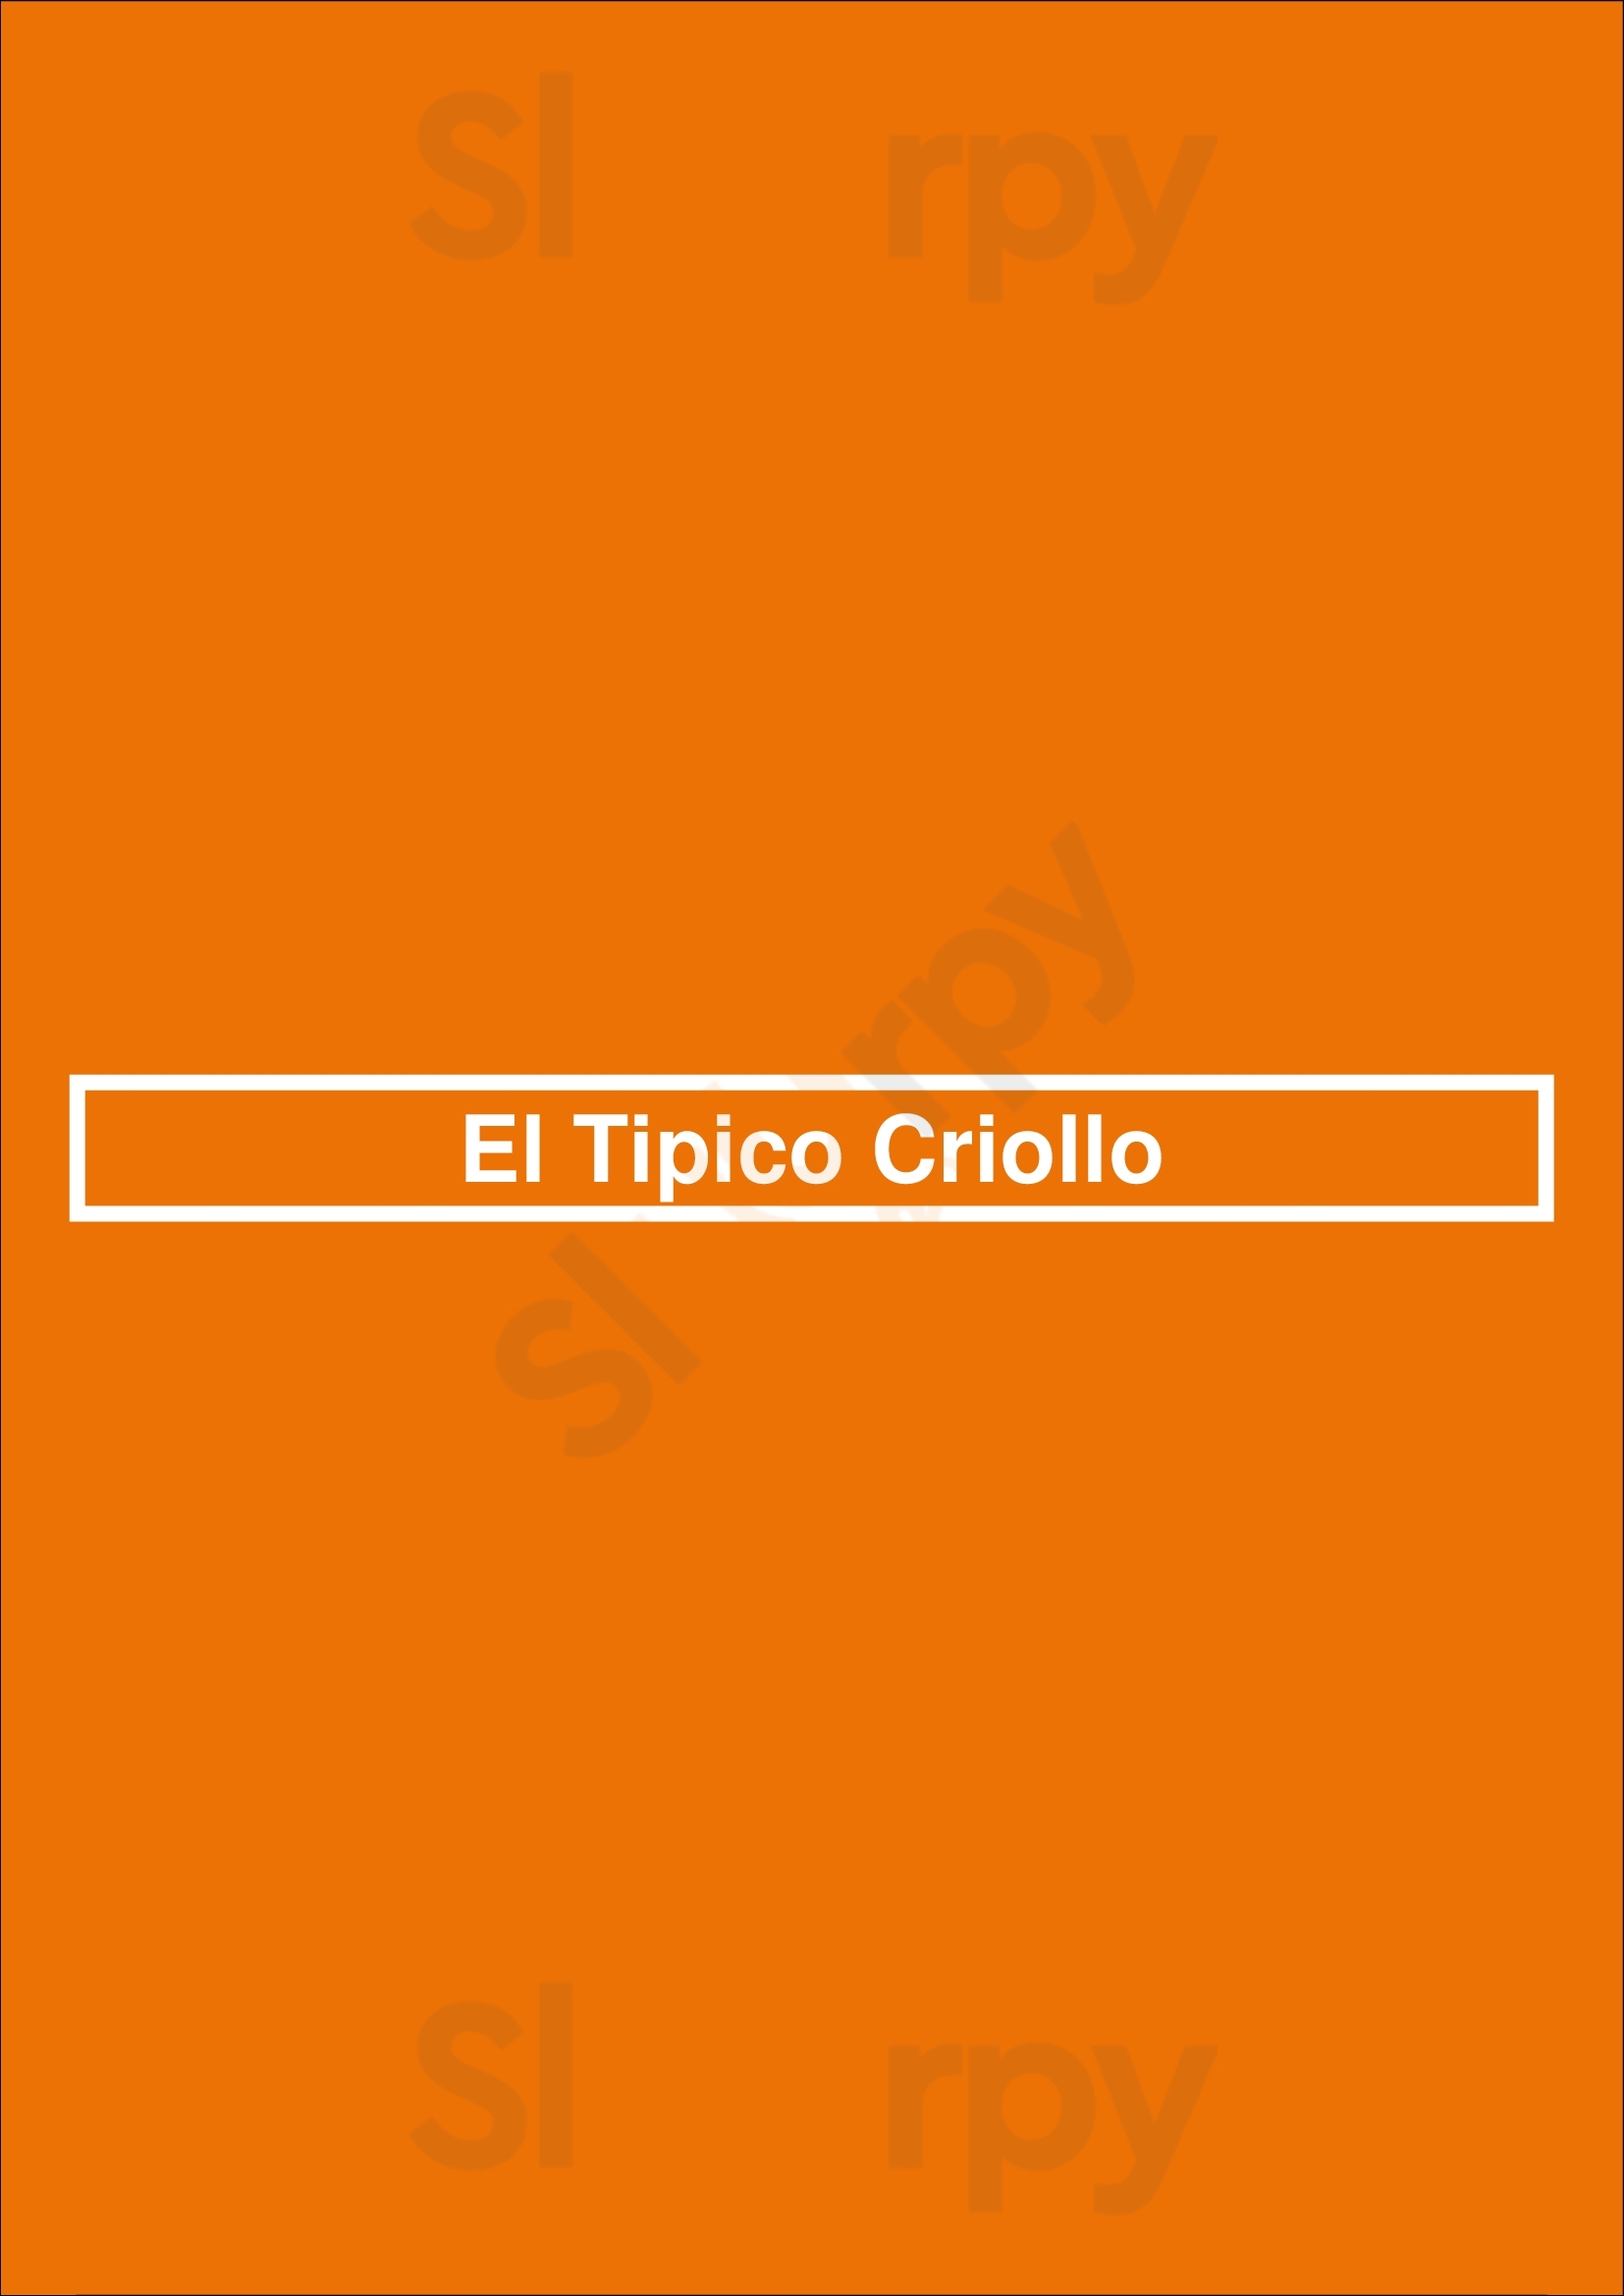 El Tipico Criollo Tampa Menu - 1